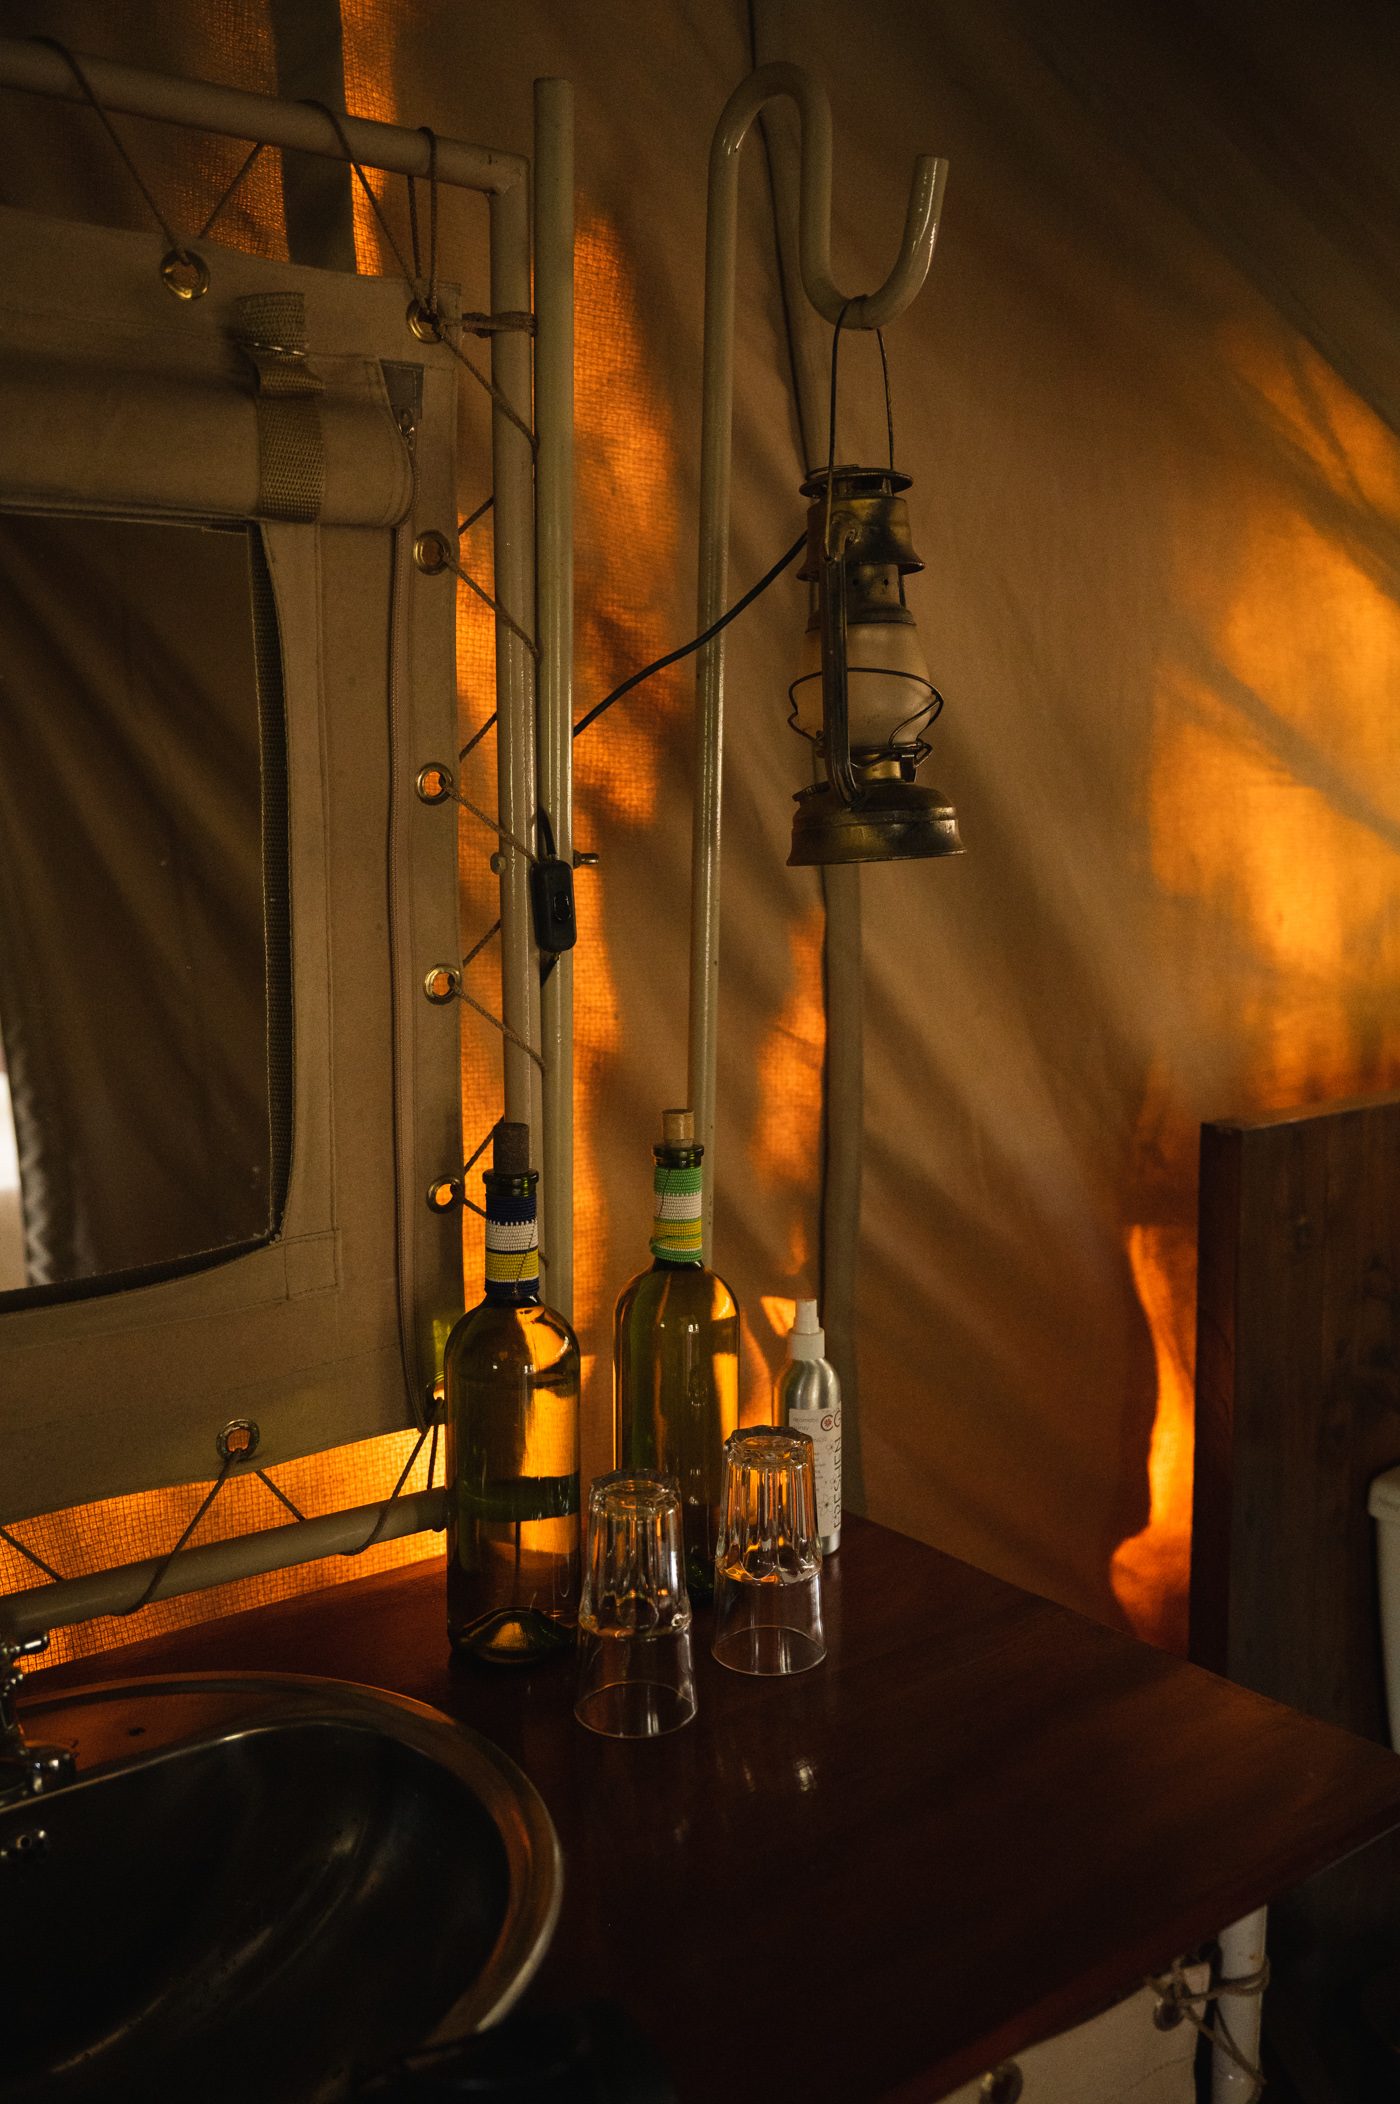 Tent number 7 at Nairobi Tented Camp by Porini